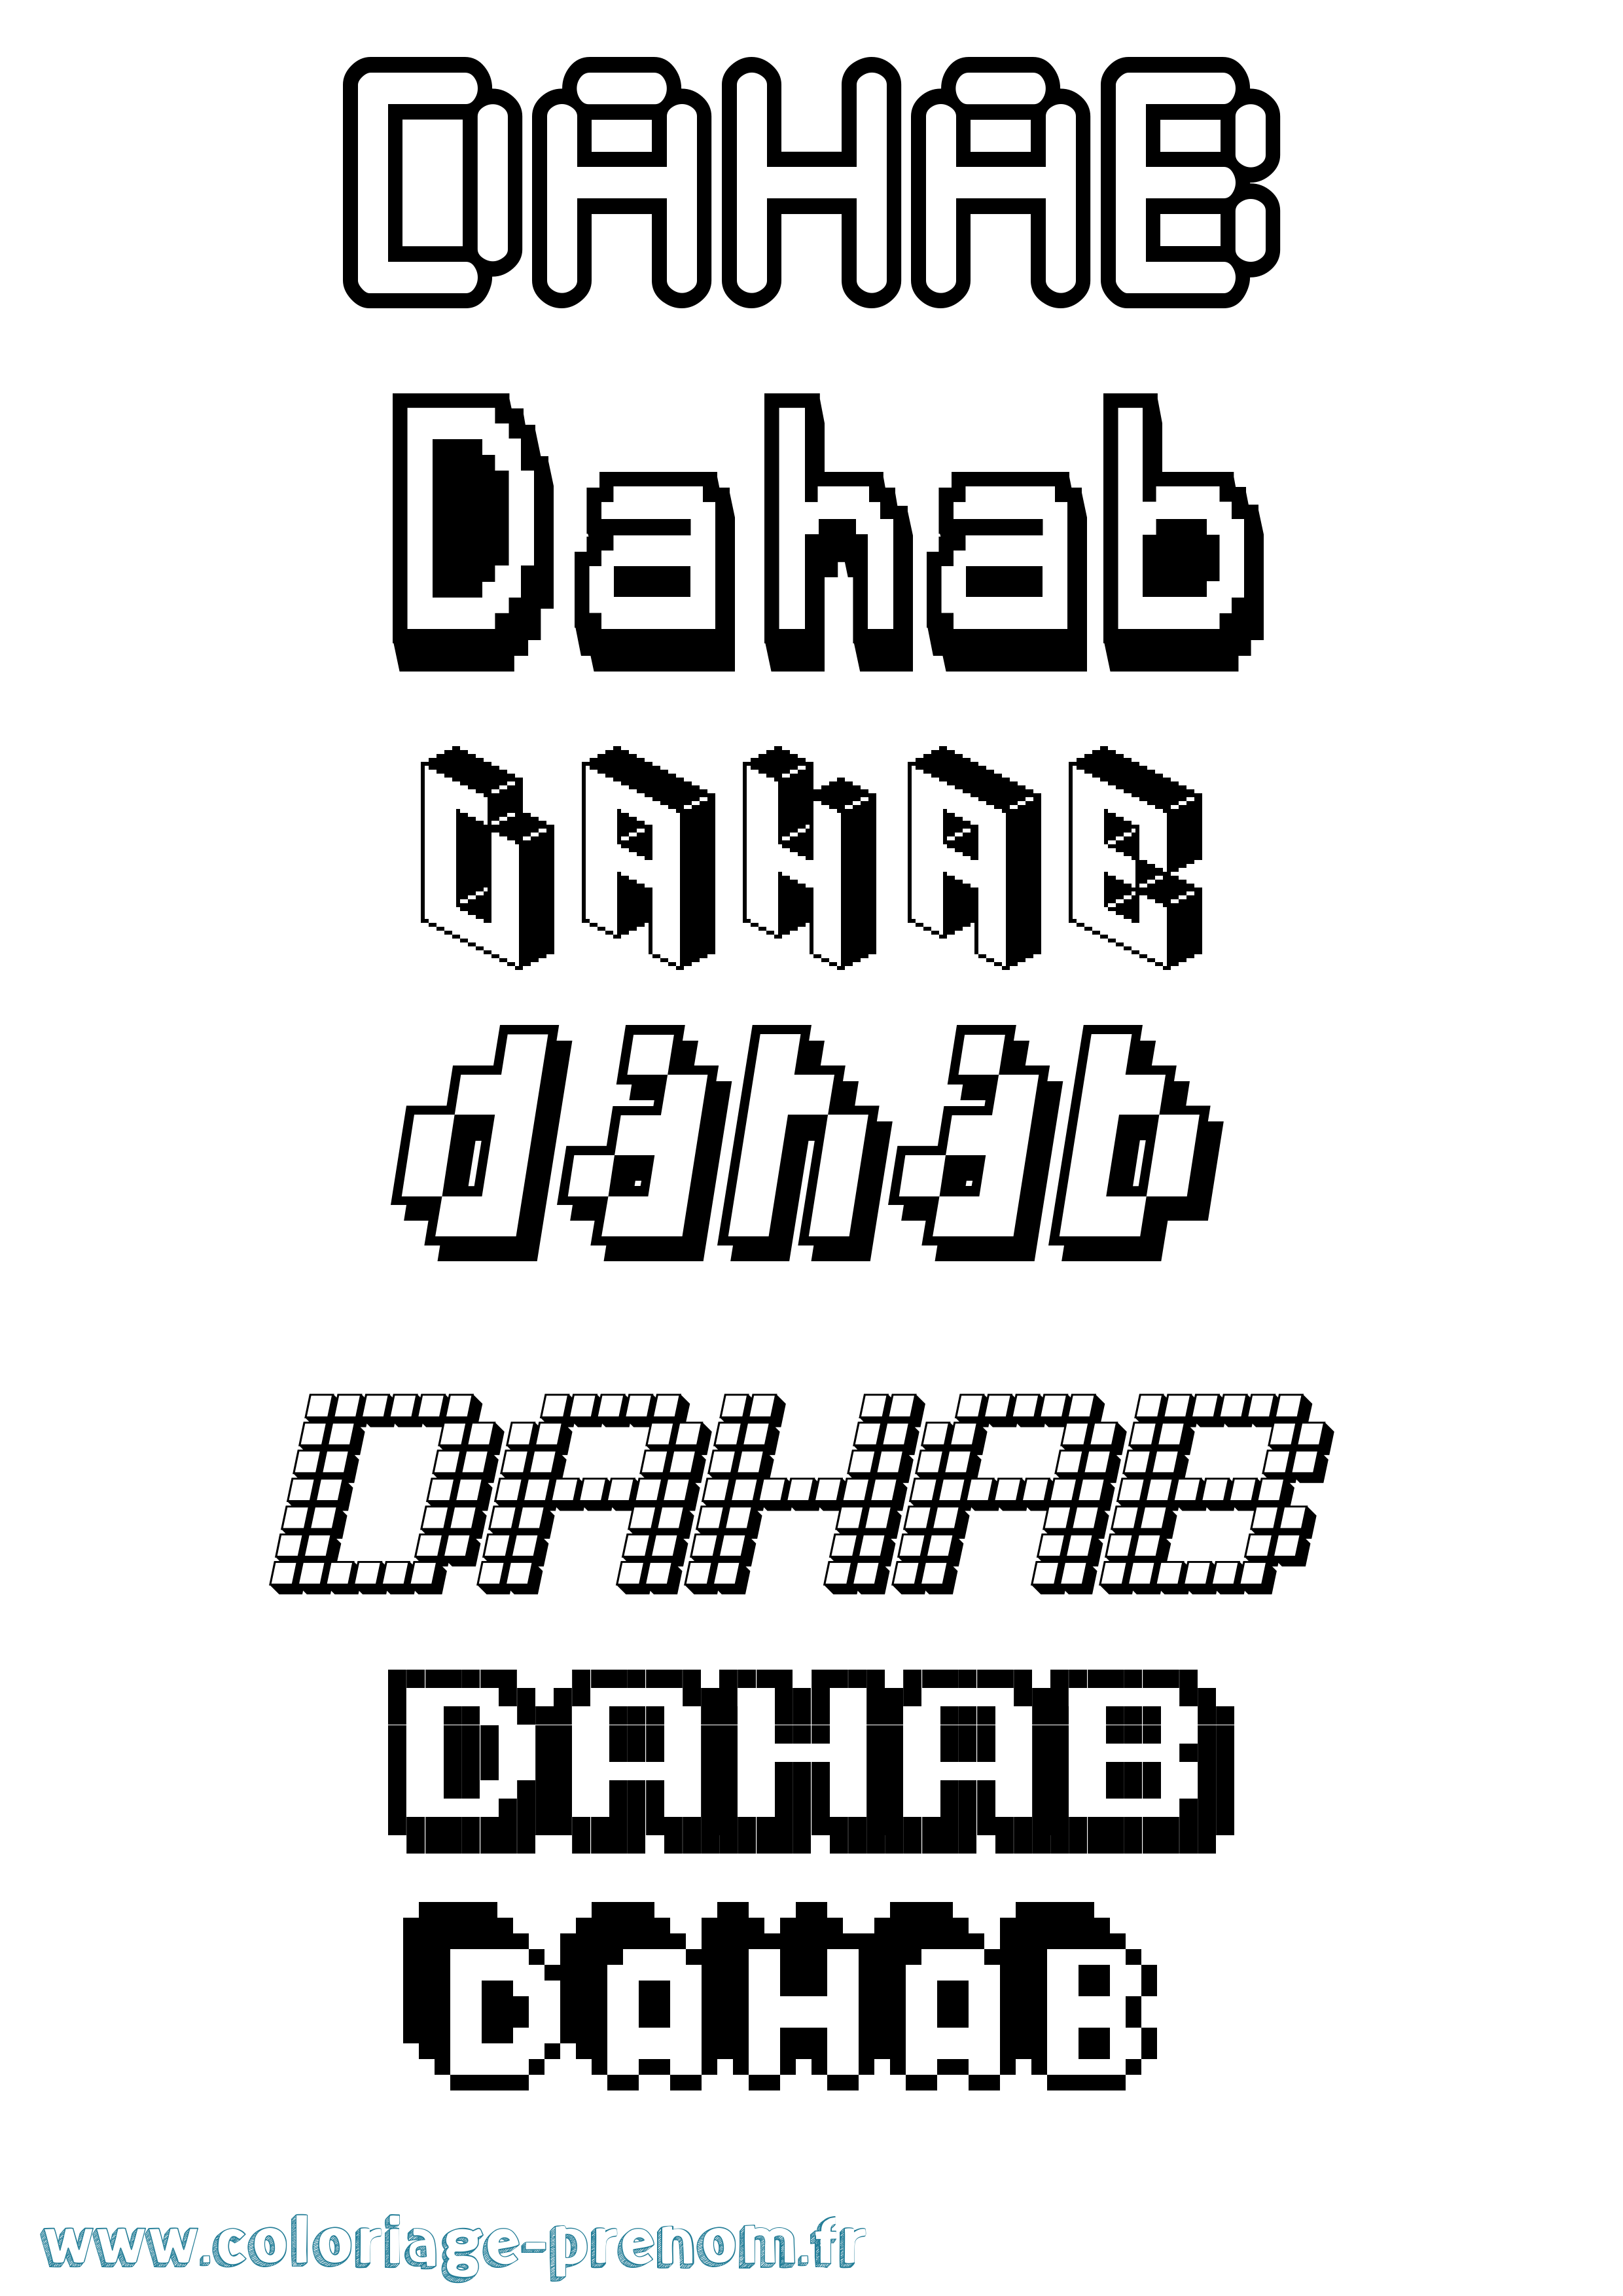 Coloriage prénom Dahab Pixel